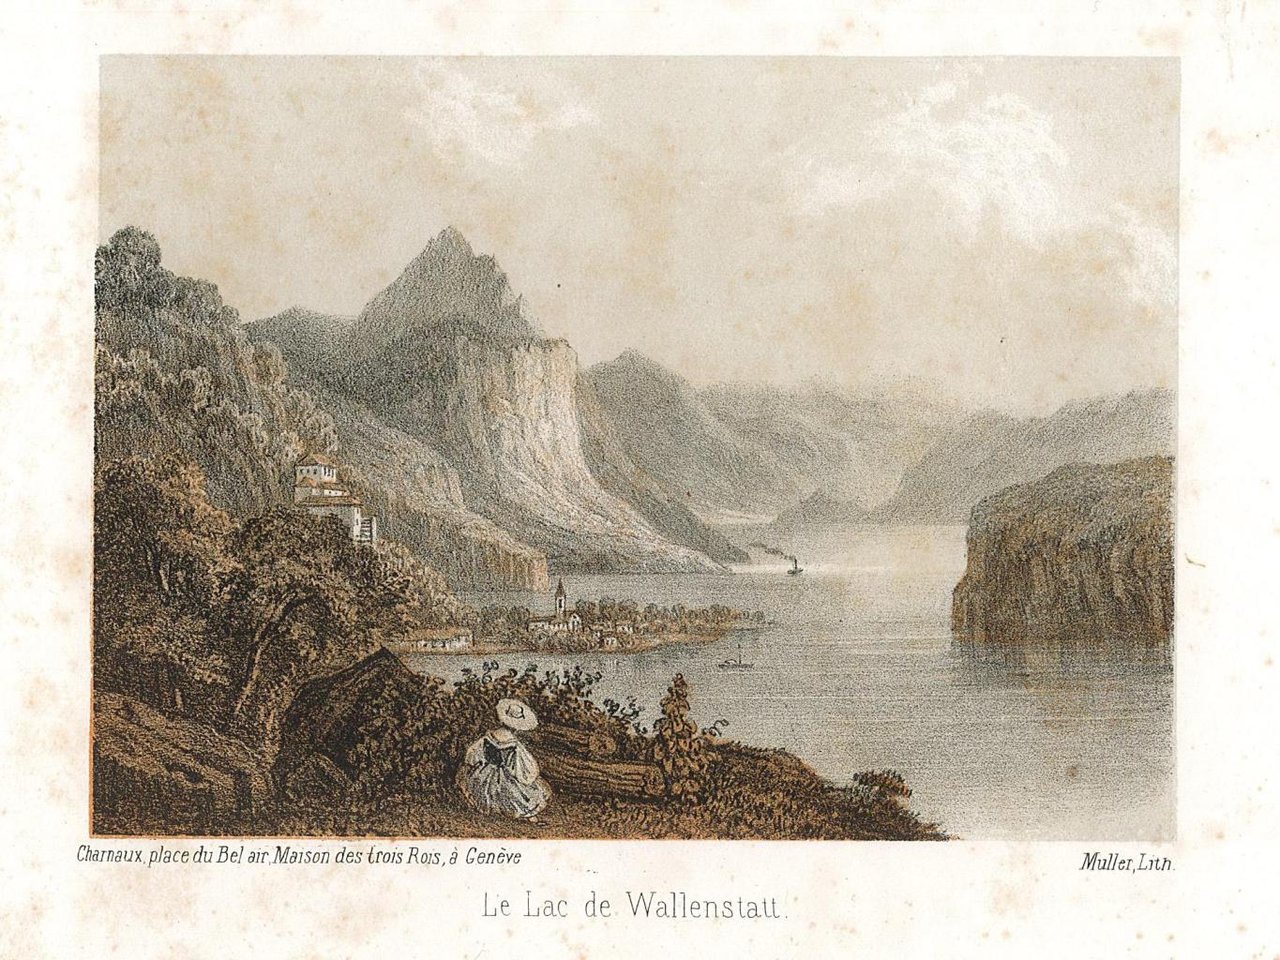 Le Lac de Wallenstatt